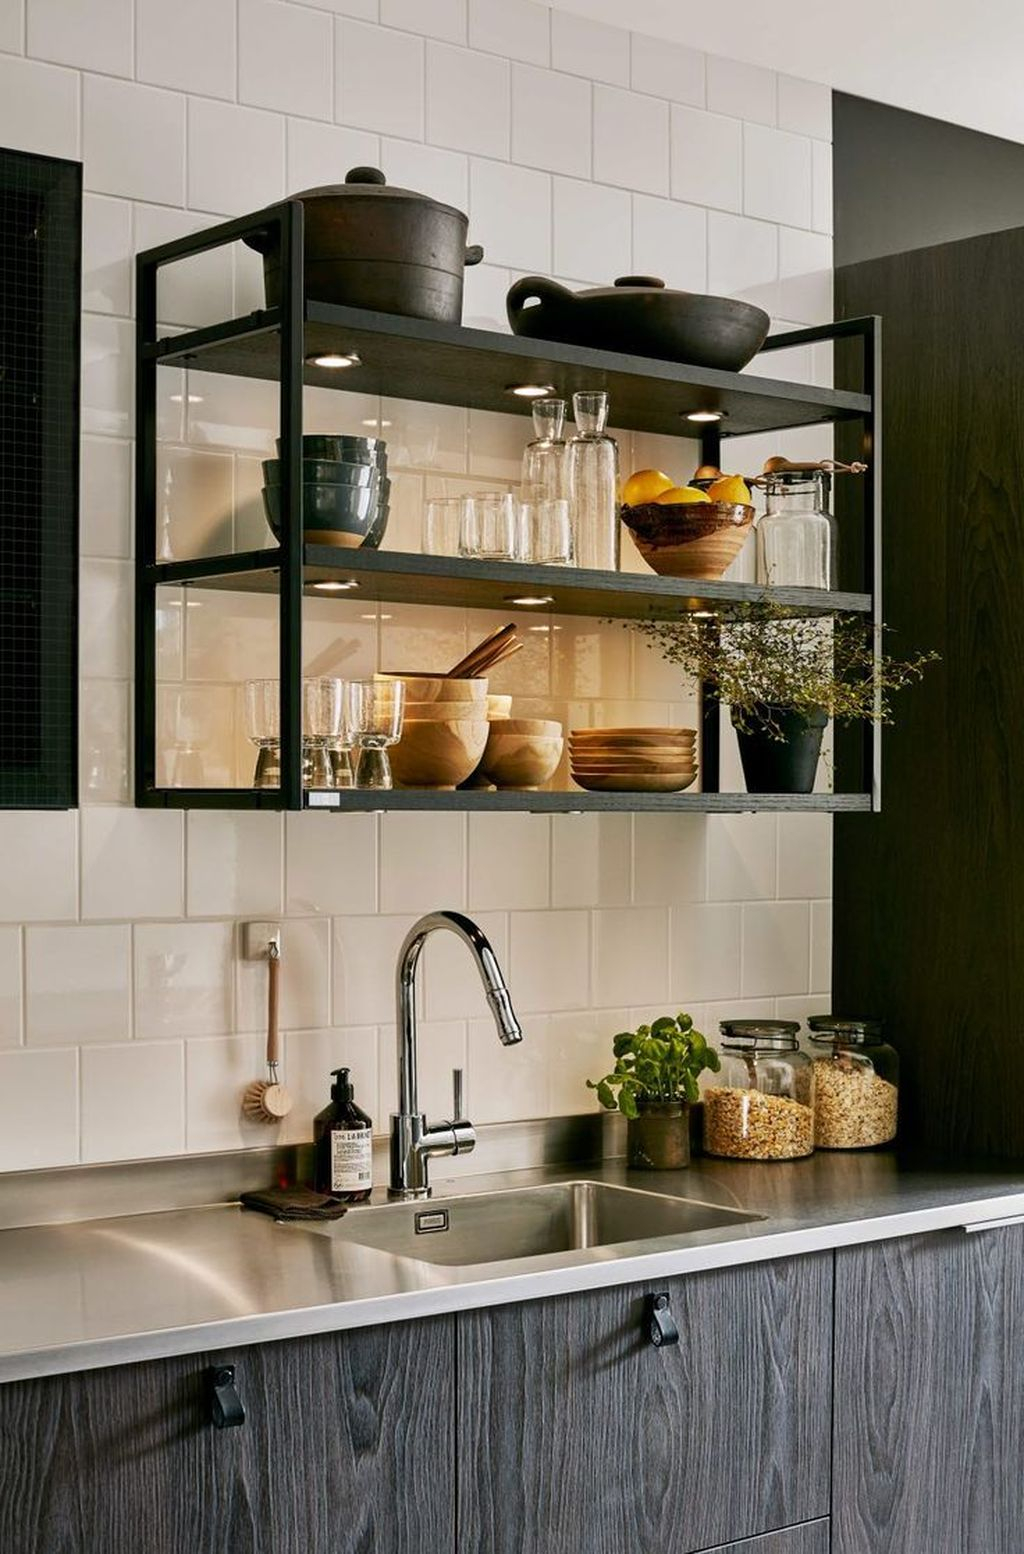 Wonderful Industrial Kitchen Shelf Design Ideas To Organize Your Kitchen34